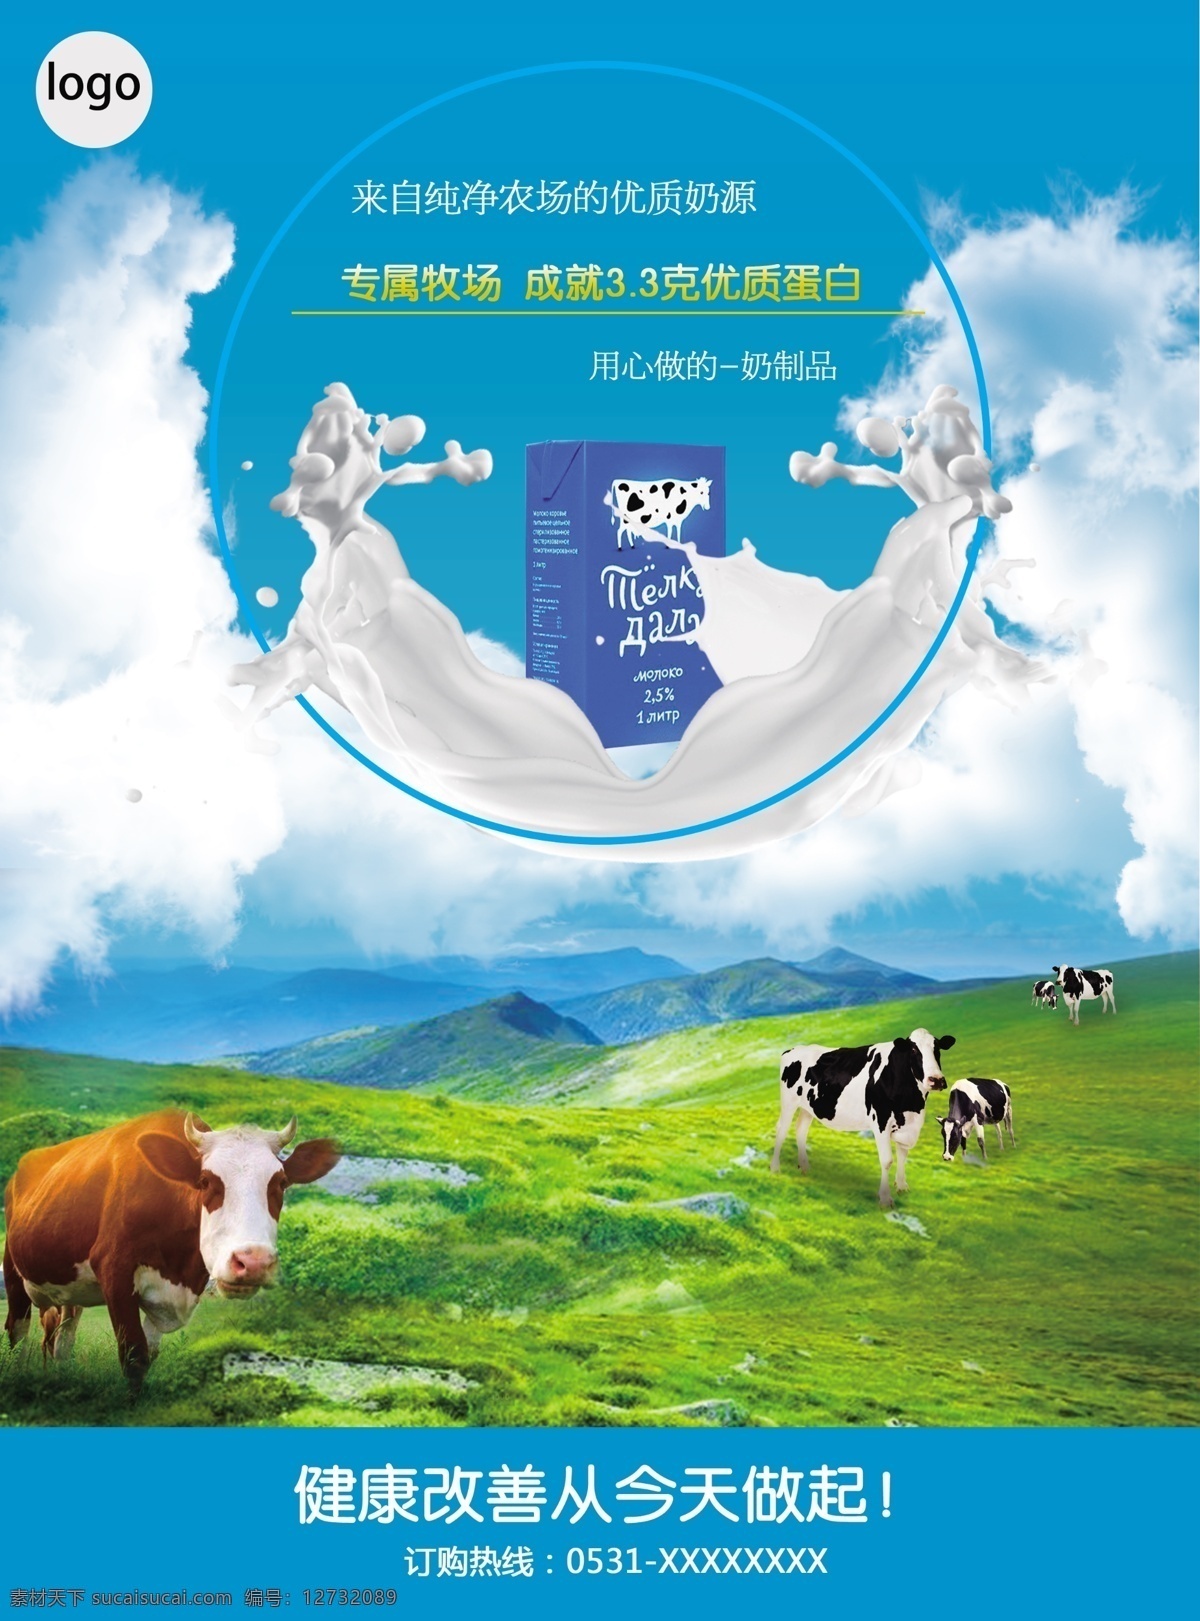 牛奶 订购 促销 喷绘 模板 草原 促销海报 可商用 蓝色 奶牛 小清新风格 自然